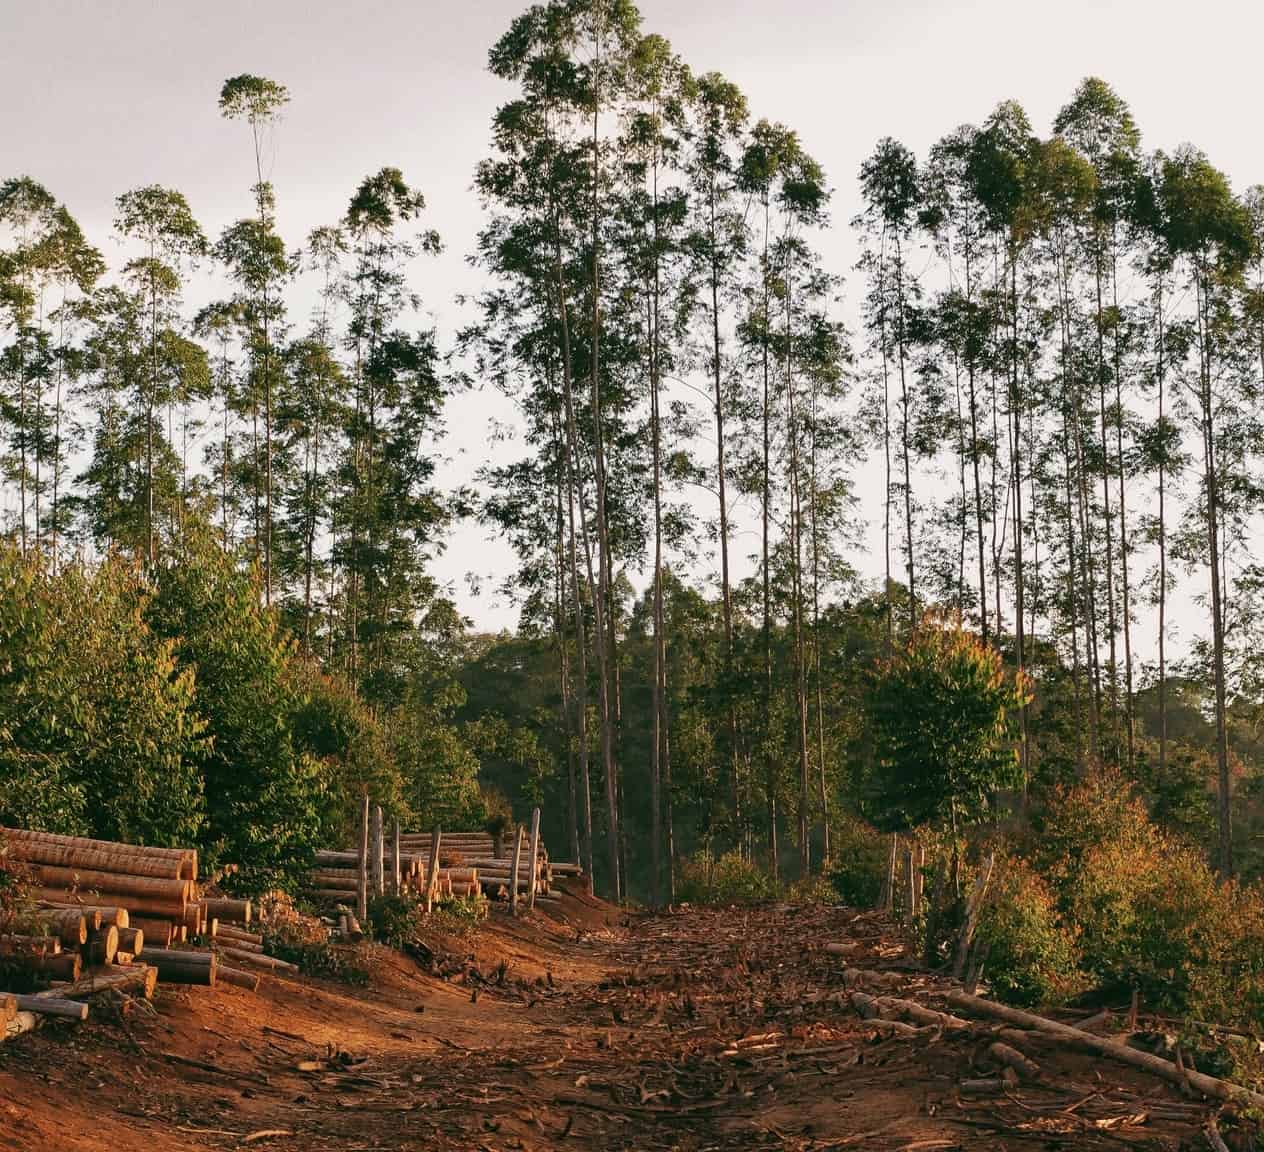 Reforestation funding